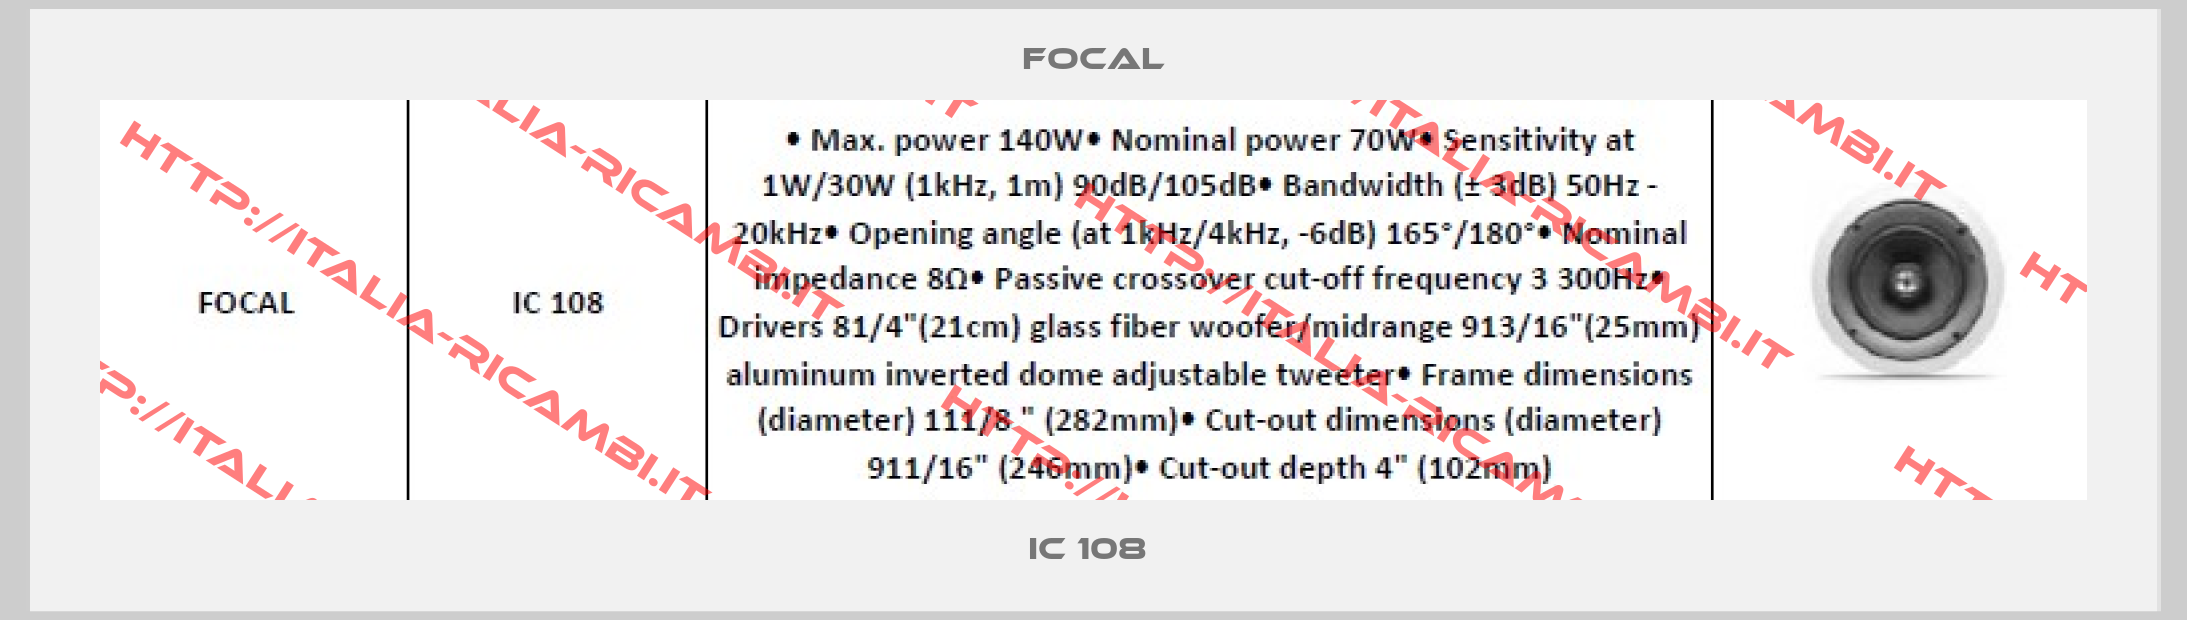 Focal-IC 108 